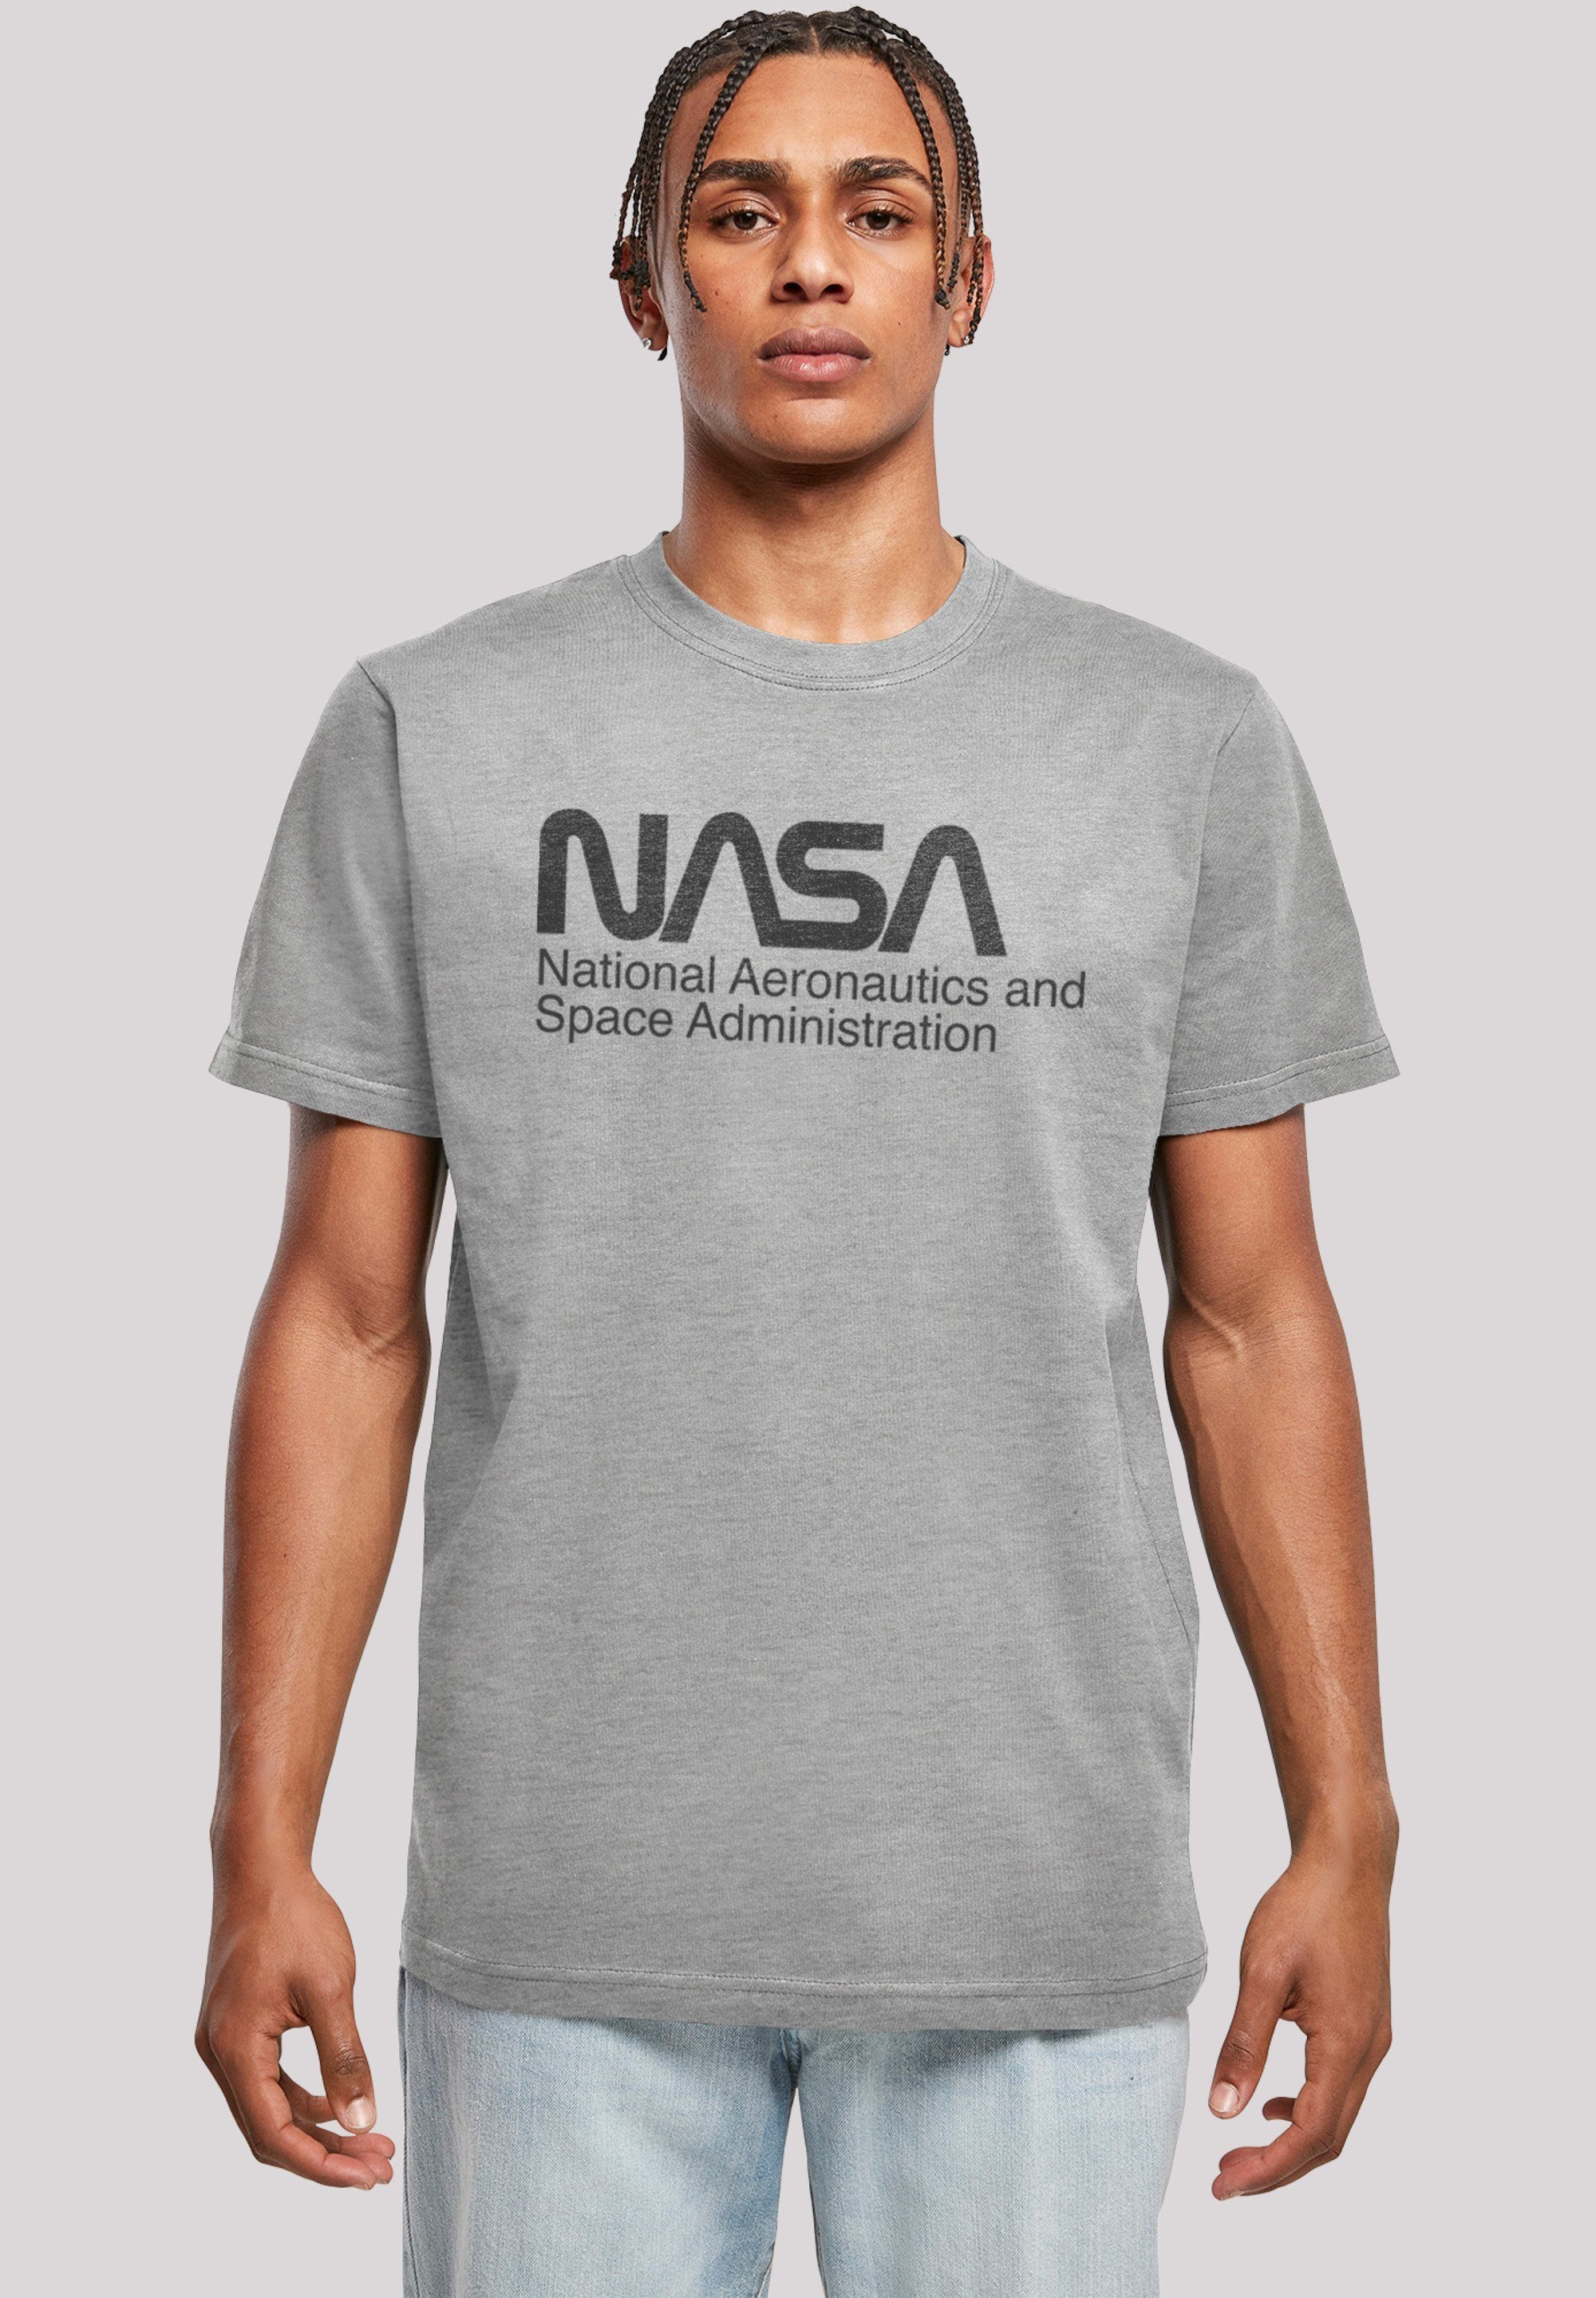 F4NT4STIC T-Shirt Tragekomfort Baumwollstoff Sehr One weicher NASA Tone Logo Print, hohem mit